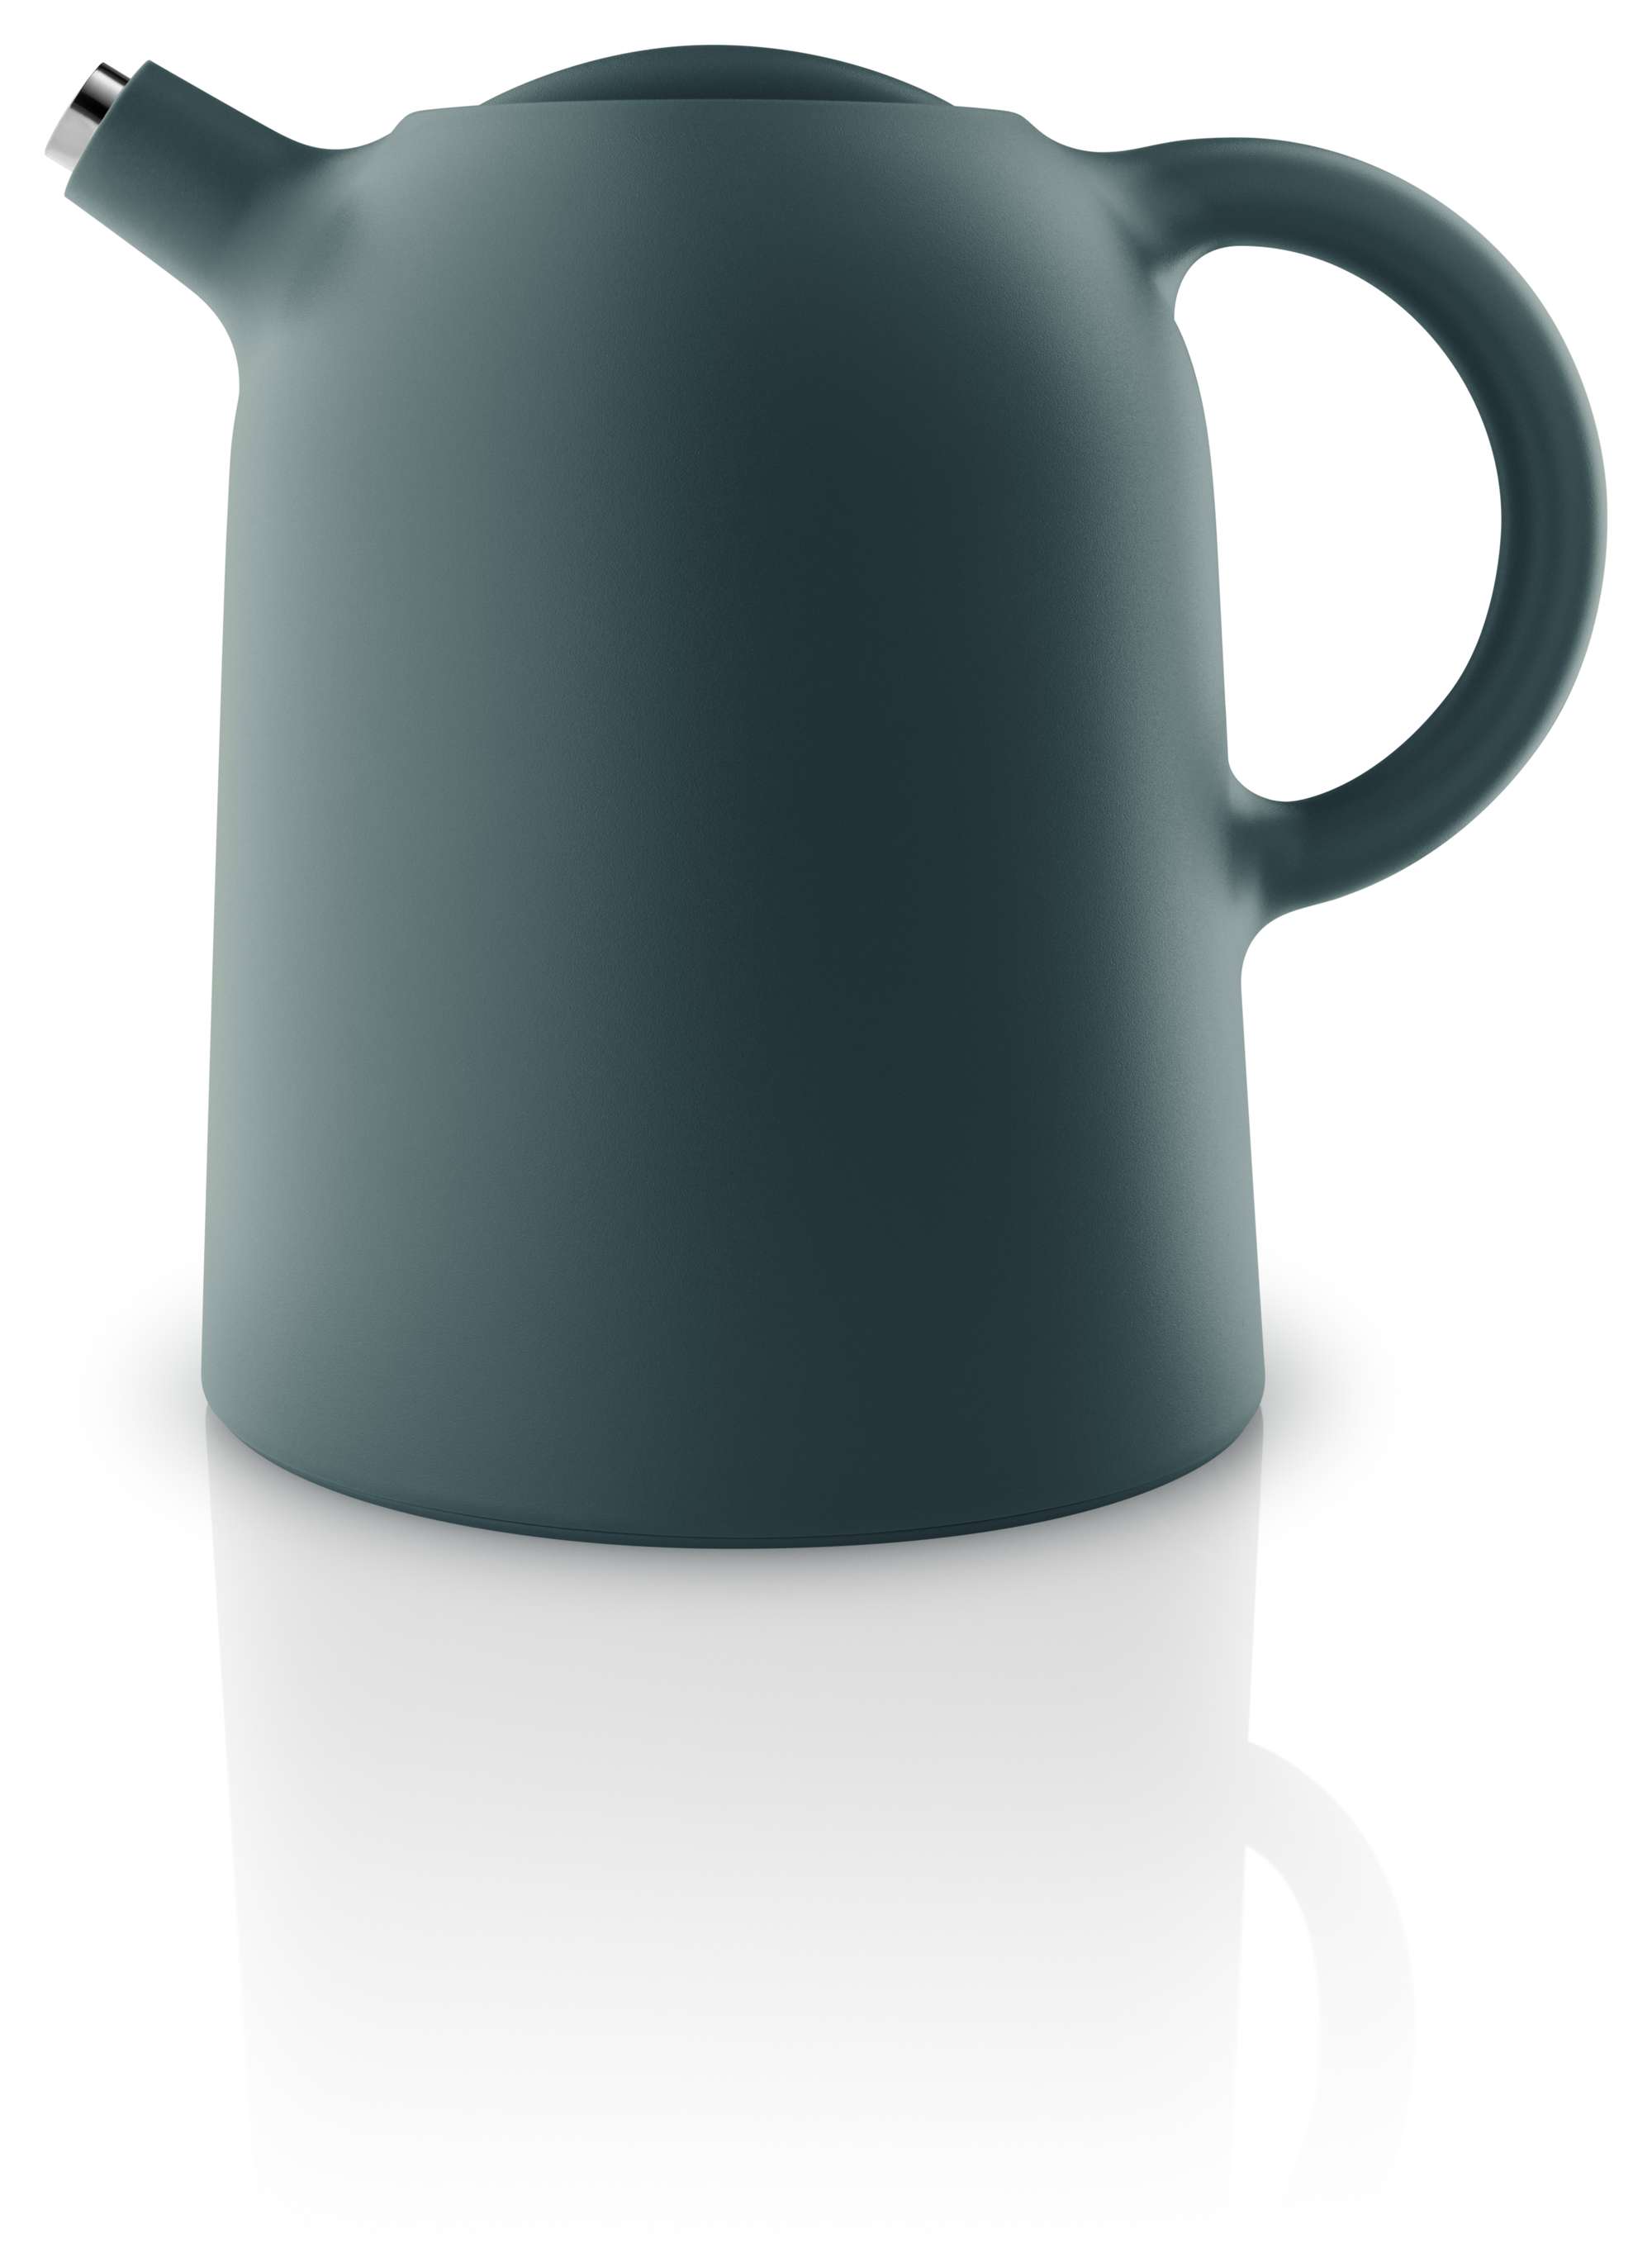 Thimble vacuum jug - 1 liter - Petrol